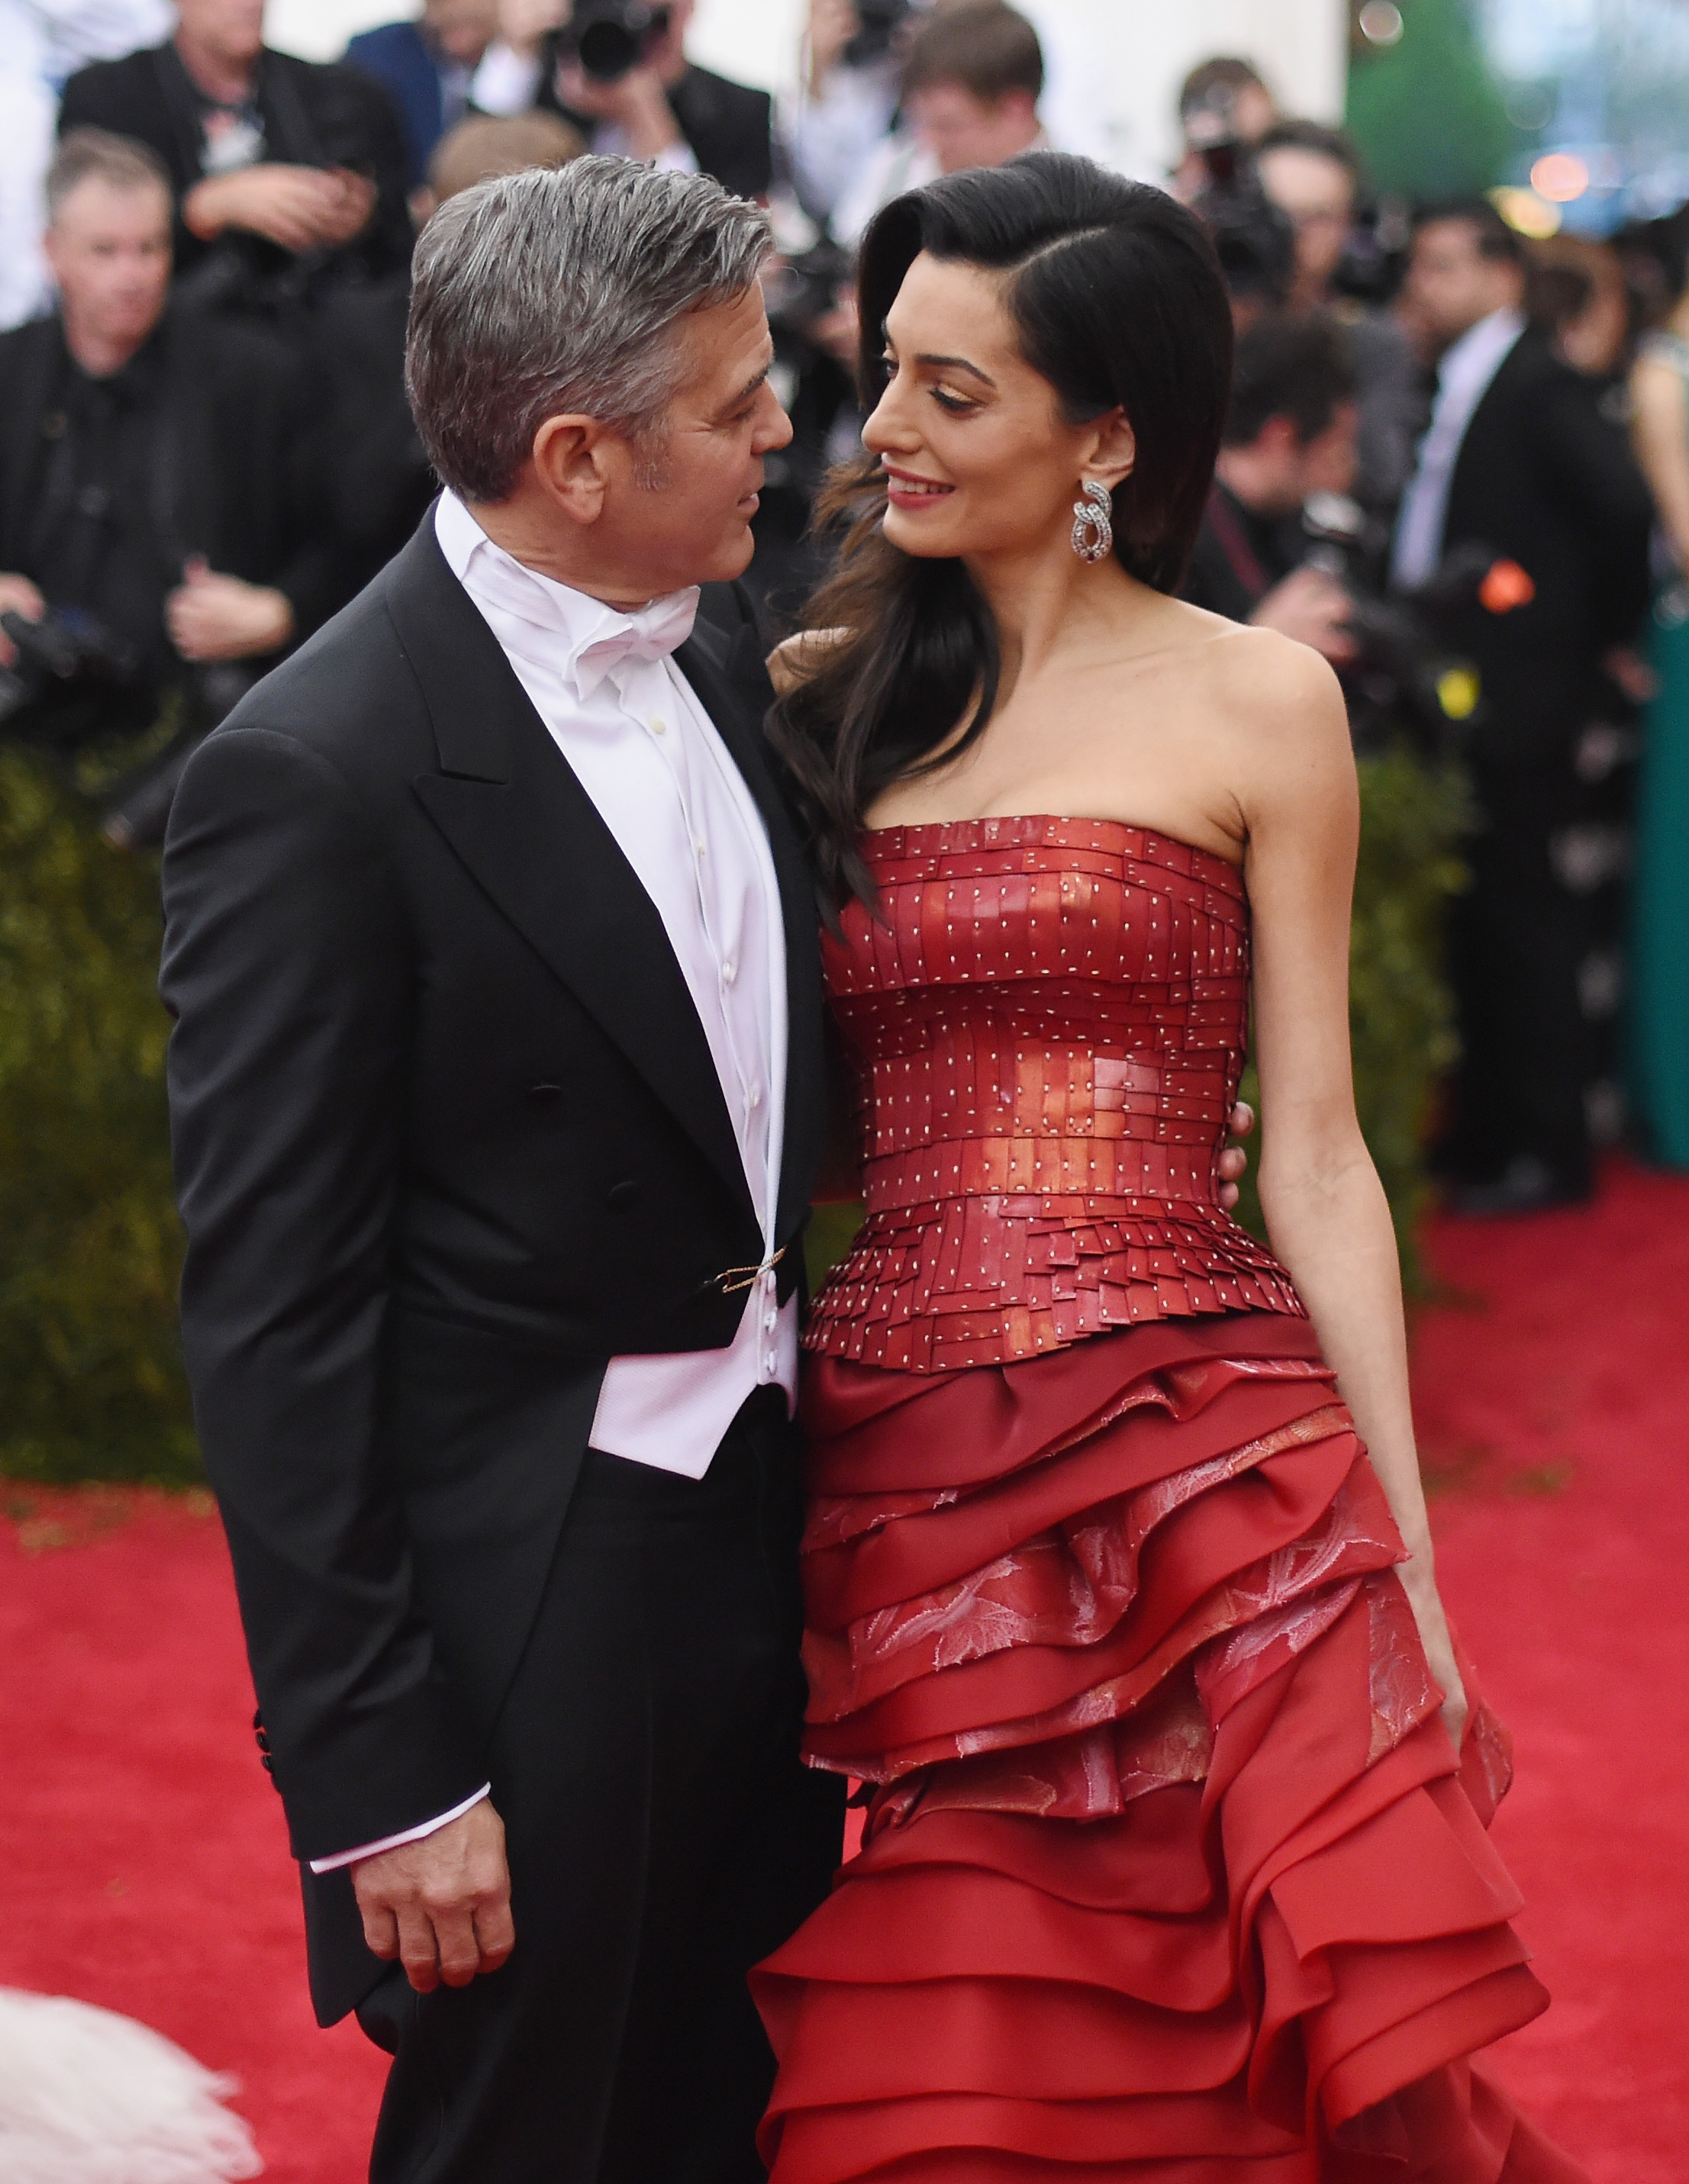 George Clooney et Amal Clooney au Metropolitan Museum of Art le 4 mai 2015 à New York | Source : Getty Images